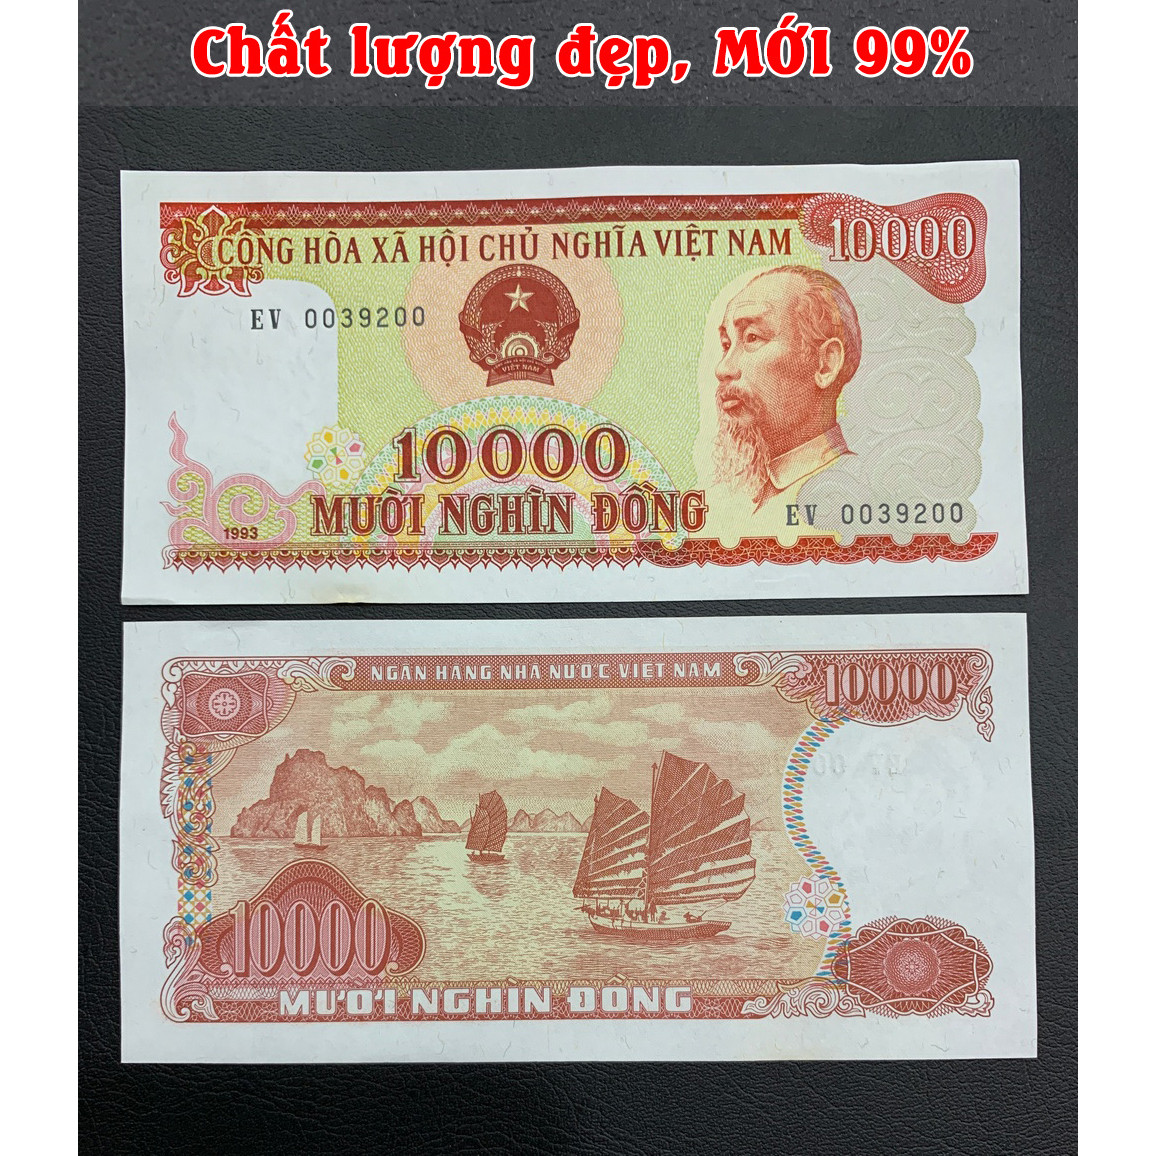 Tiền 10 Nghìn Đỏ 1993 [MỚI 99%] Hoa hậu tiền giấy xưa, mới keng tuyệt đẹp